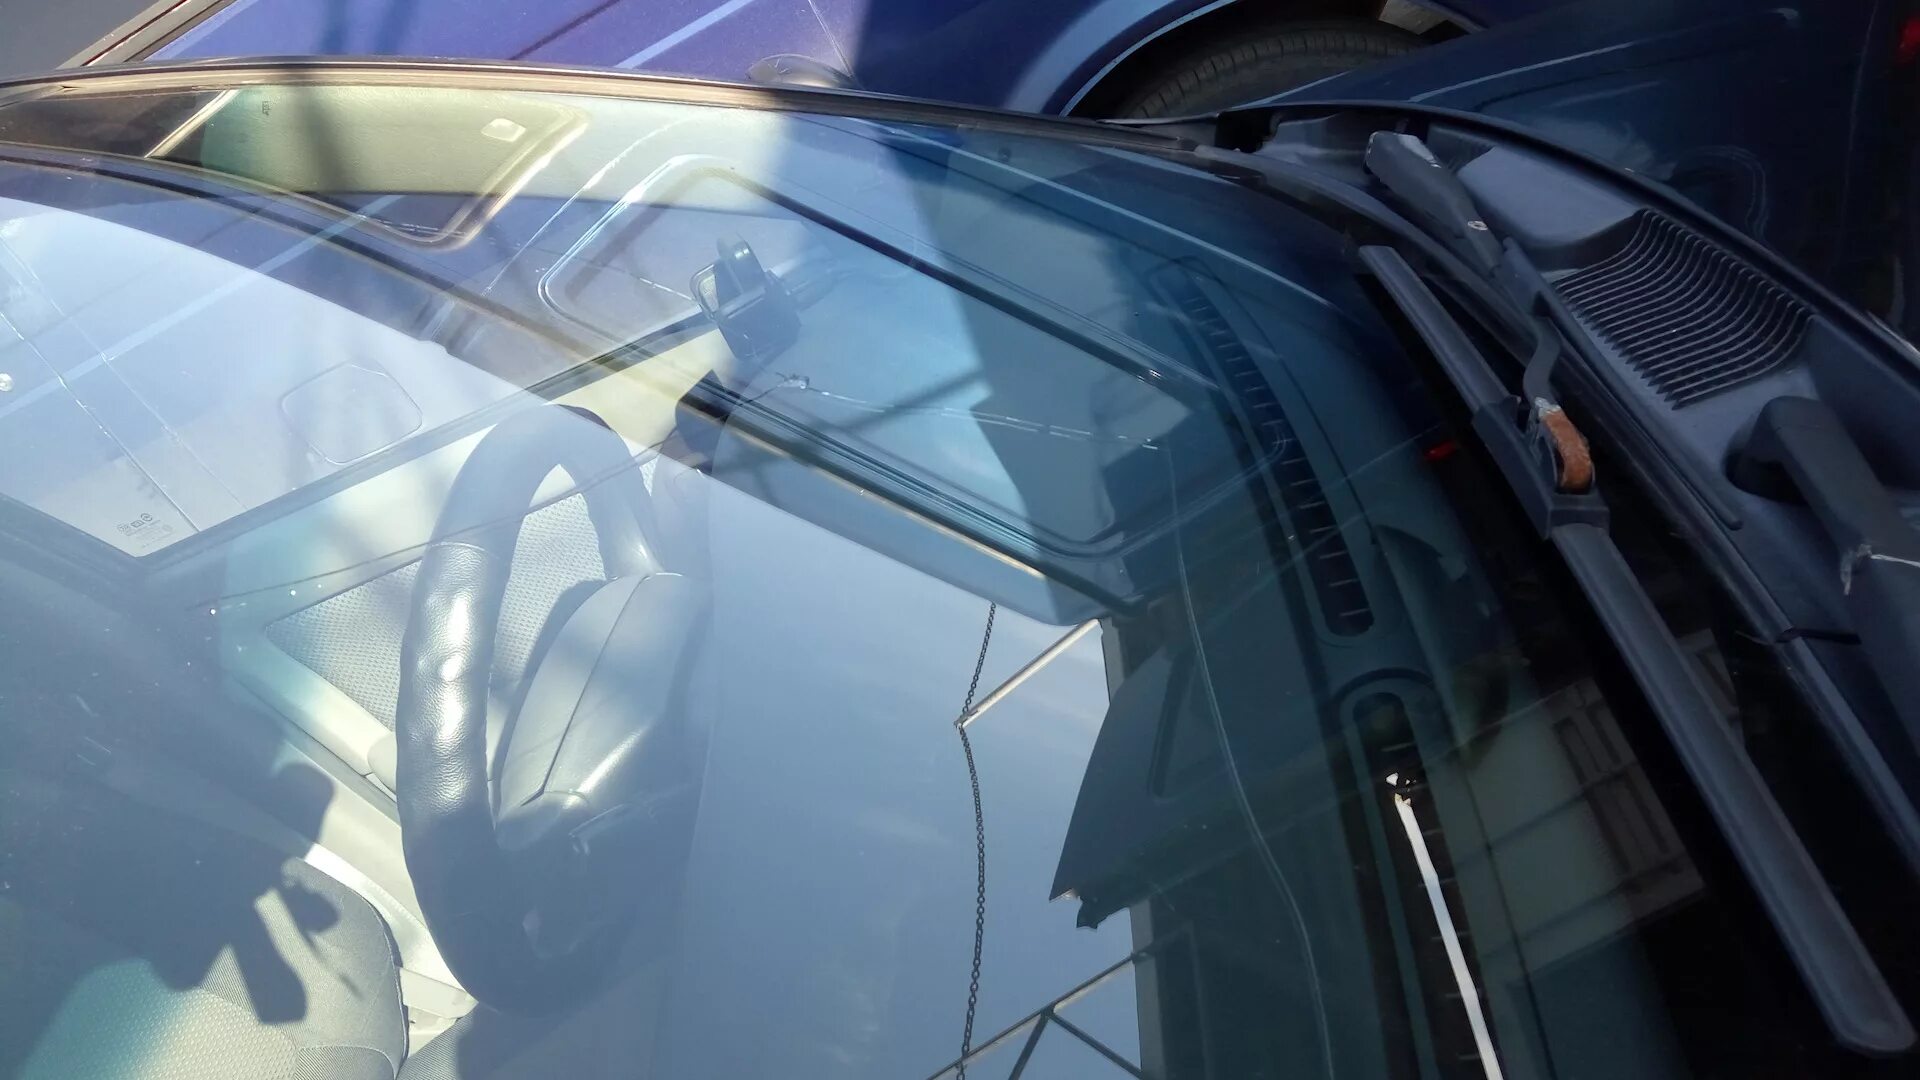 Автостекла рядом. Hyundai Elantra 2021 стекло ветрового окна. Лобовое стекло вблизи. Тонированное стекло отопителя. Хендай Элантра 2022 лобовое стекло на автомобиле.